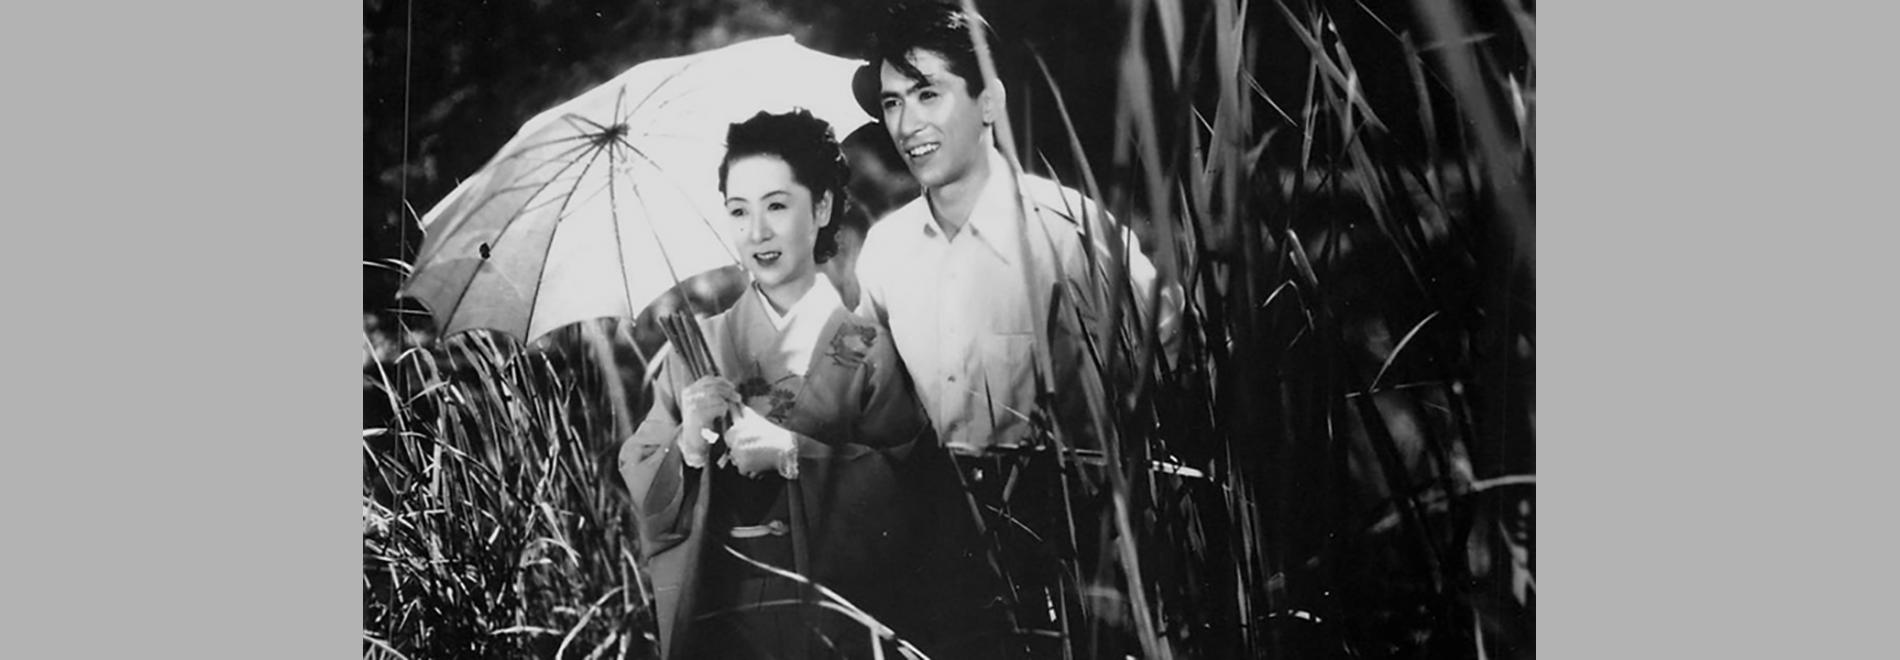 Musashino fujin / La dama de Musashino (Kenji Mizoguchi, 1951)